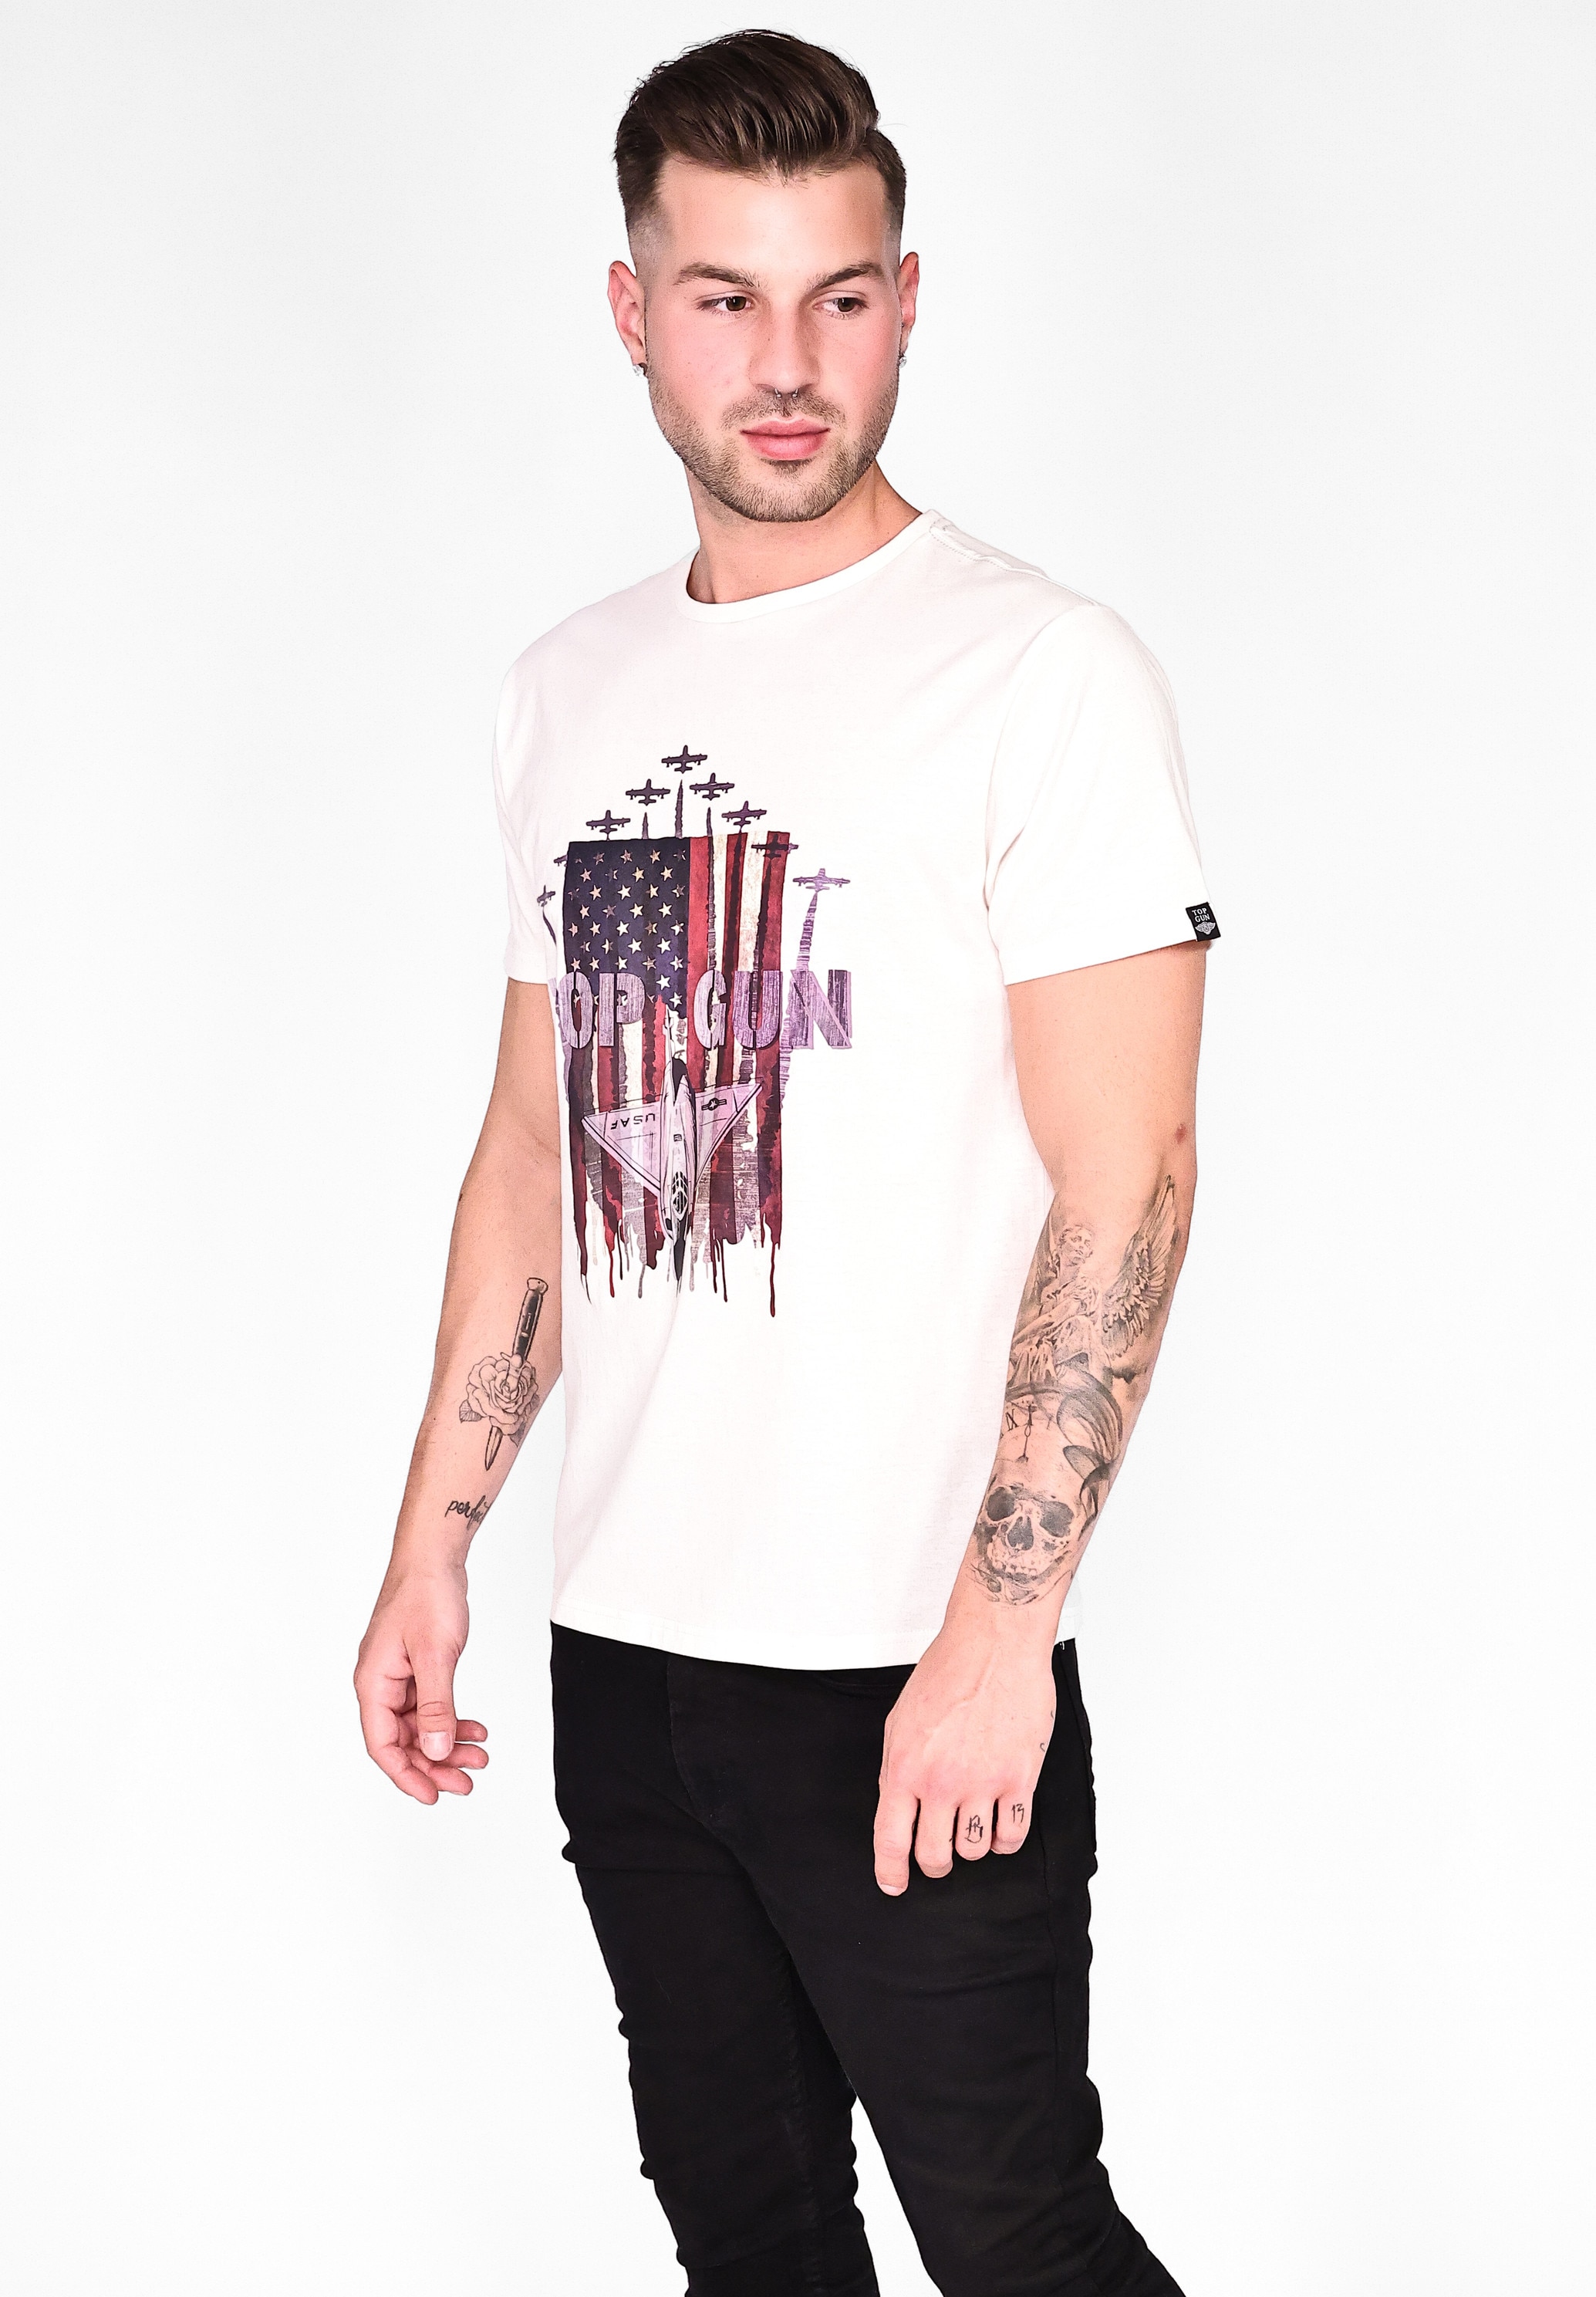 TOP GUN T-Shirt »T-Shirt TG20213021« online kaufen bei OTTO | T-Shirts